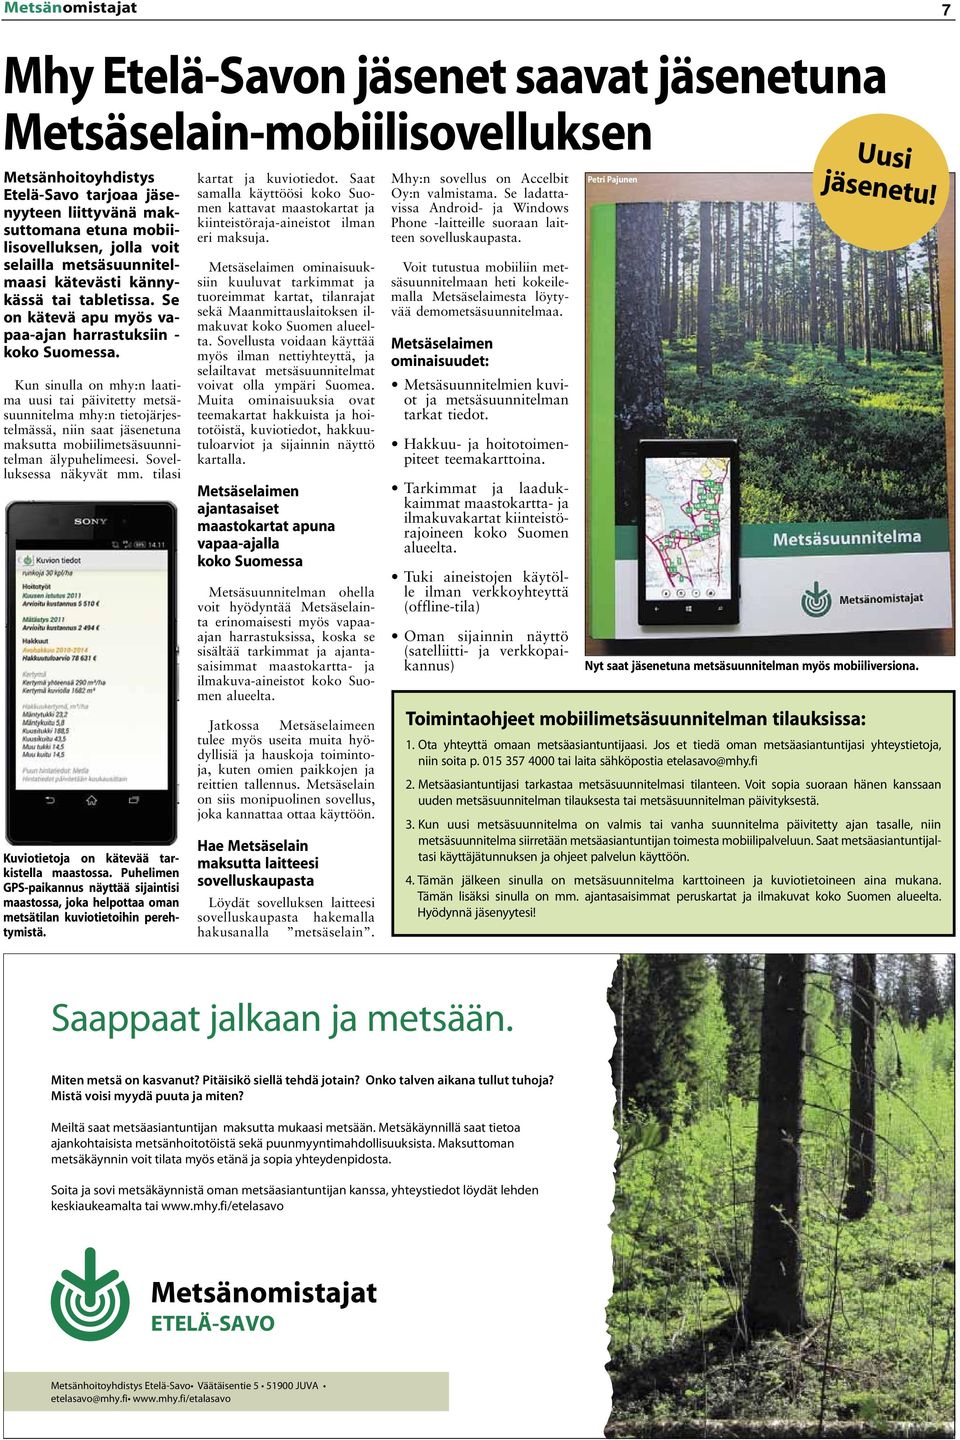 Kun sinulla on mhy:n laatima uusi tai päivitetty metsäsuunnitelma mhy:n tietojärjestelmässä, niin saat jäsenetuna maksutta mobiilimetsäsuunnitelman älypuhelimeesi. Sovelluksessa näkyvät mm.